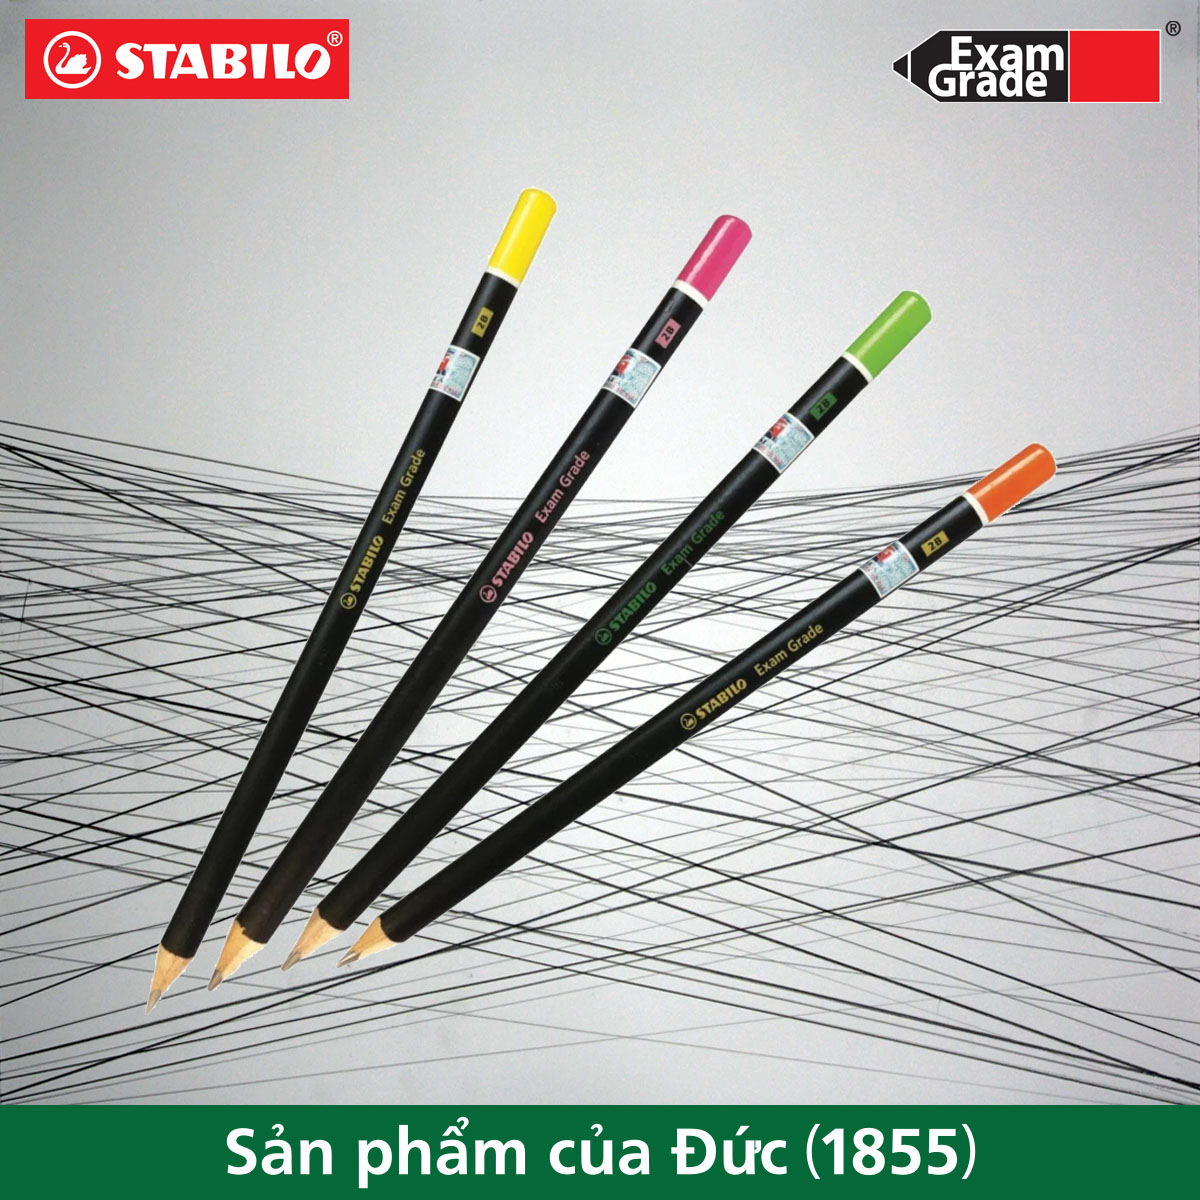 Bút chì gỗ STABILO Exam Grade 288T 2B thân tam giác, đuôi bút màu (PC288T-AT-2B)